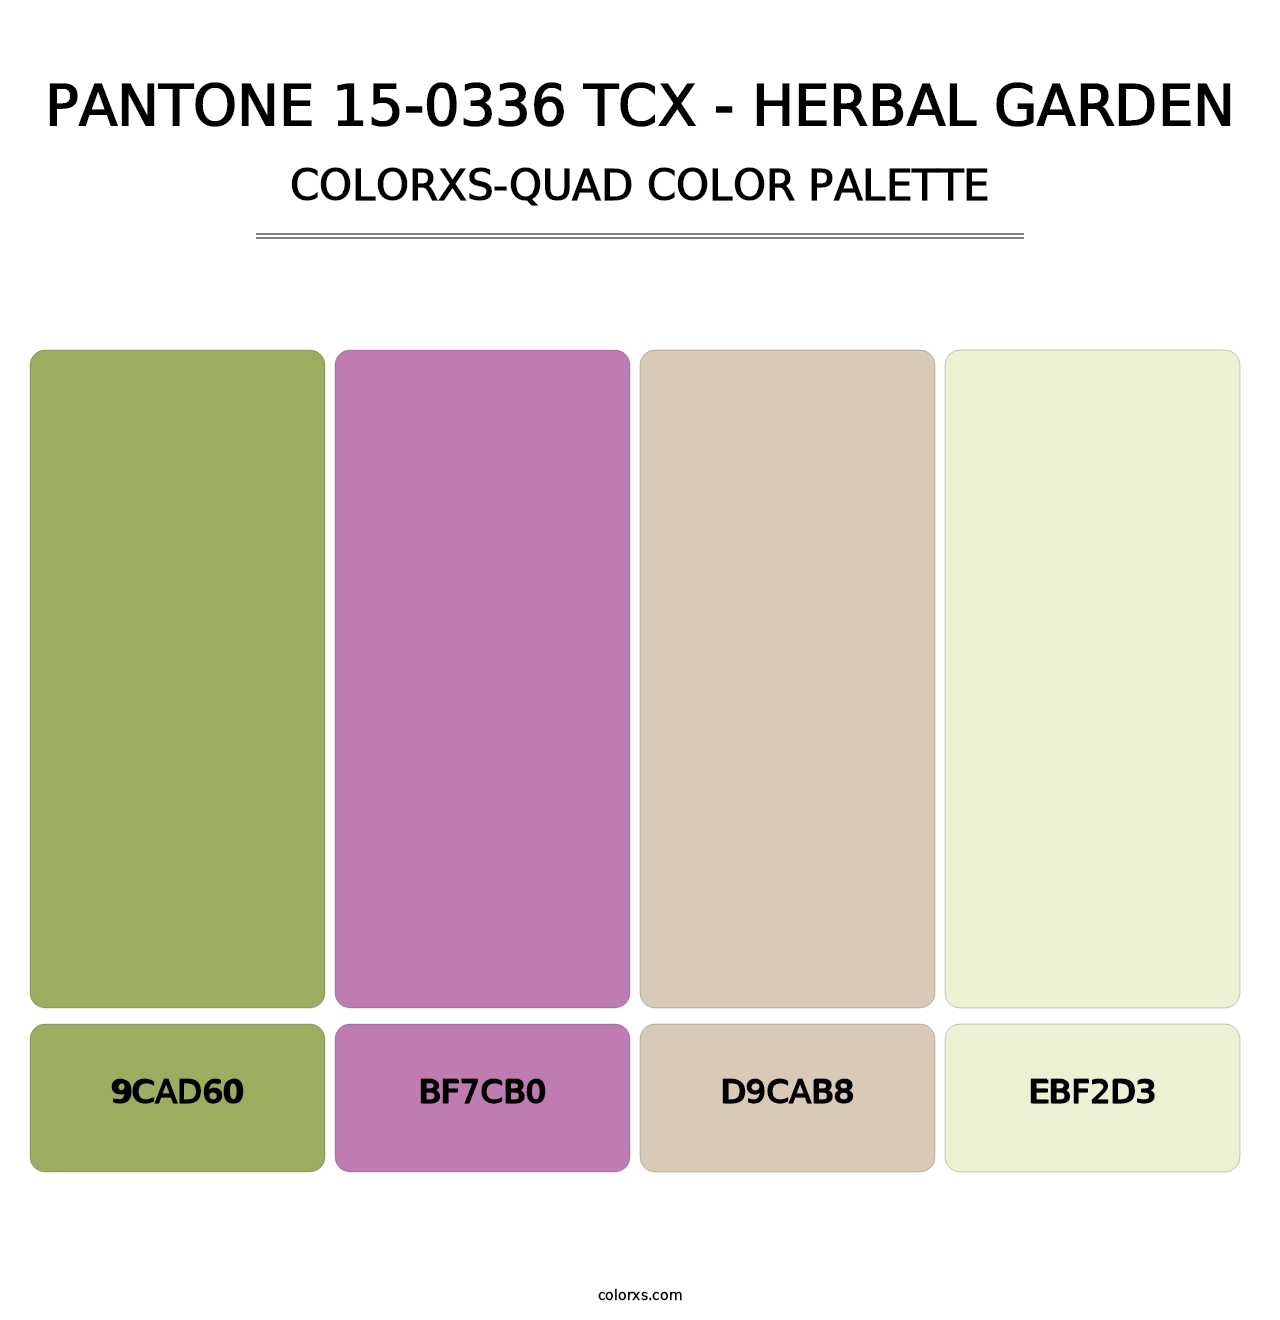 PANTONE 15-0336 TCX - Herbal Garden - Colorxs Quad Palette